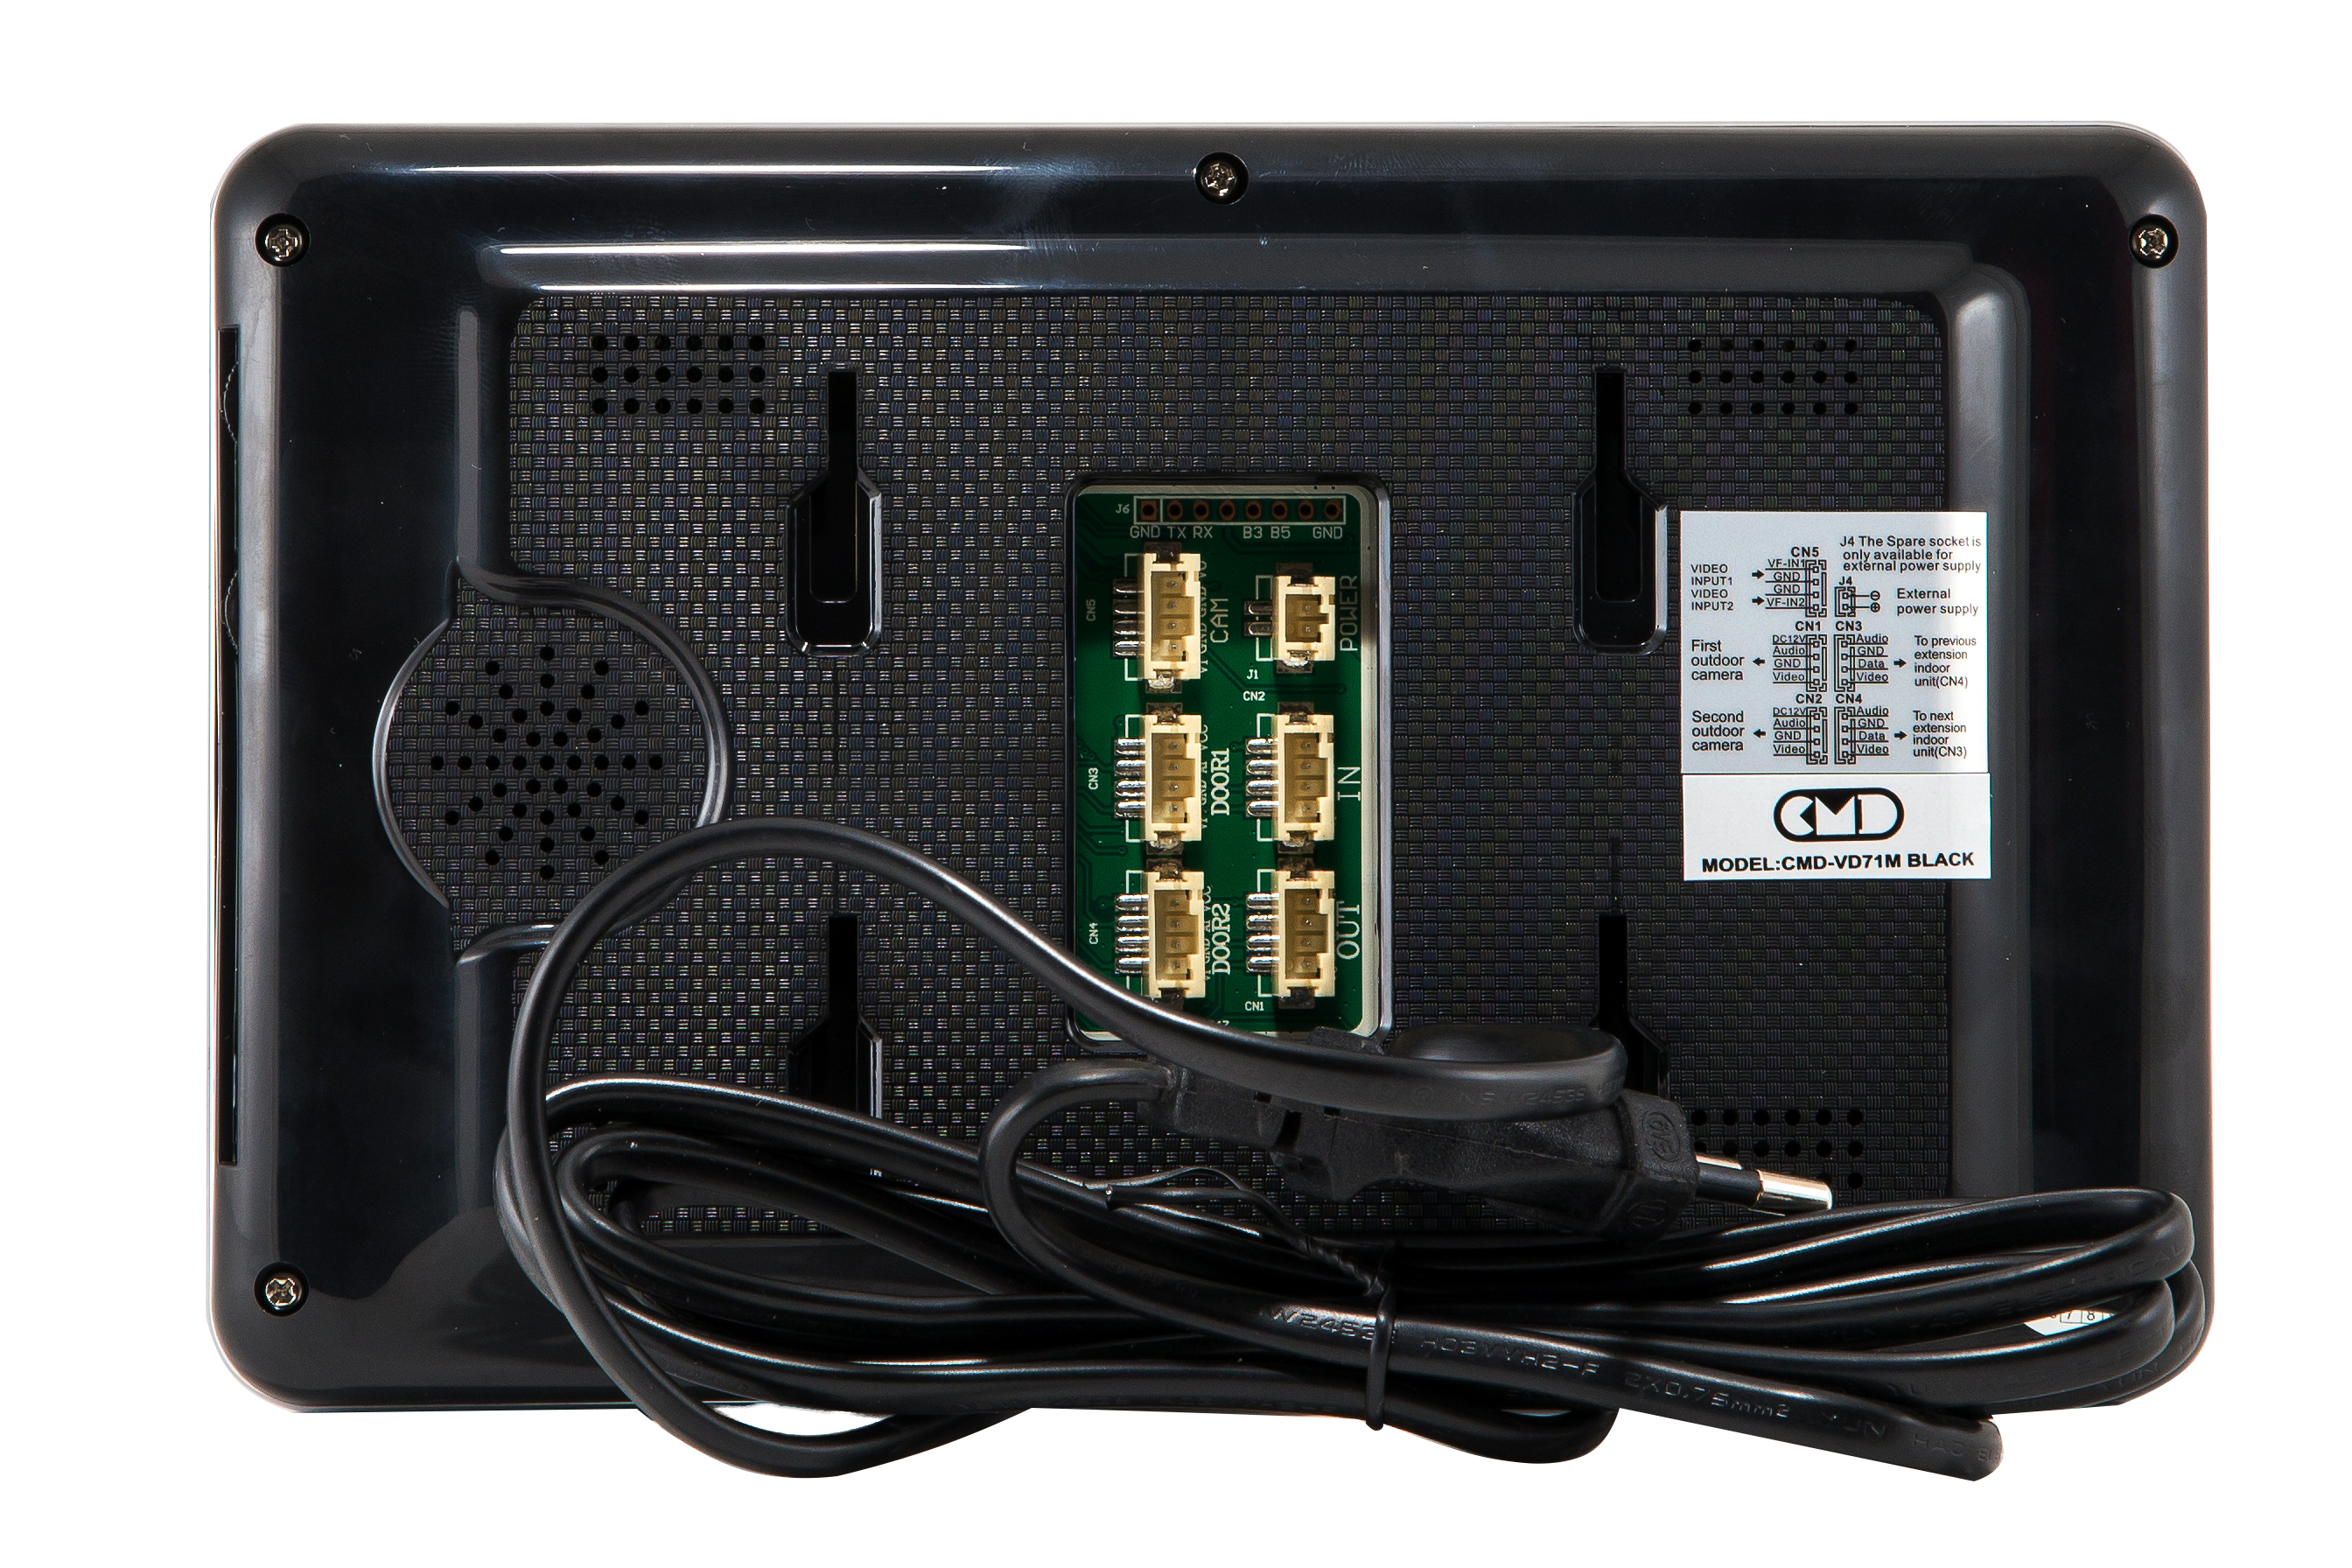  Элеком37. CMD-VD71M BLACK Цветной видеодомофон 7 дюймов. Фото